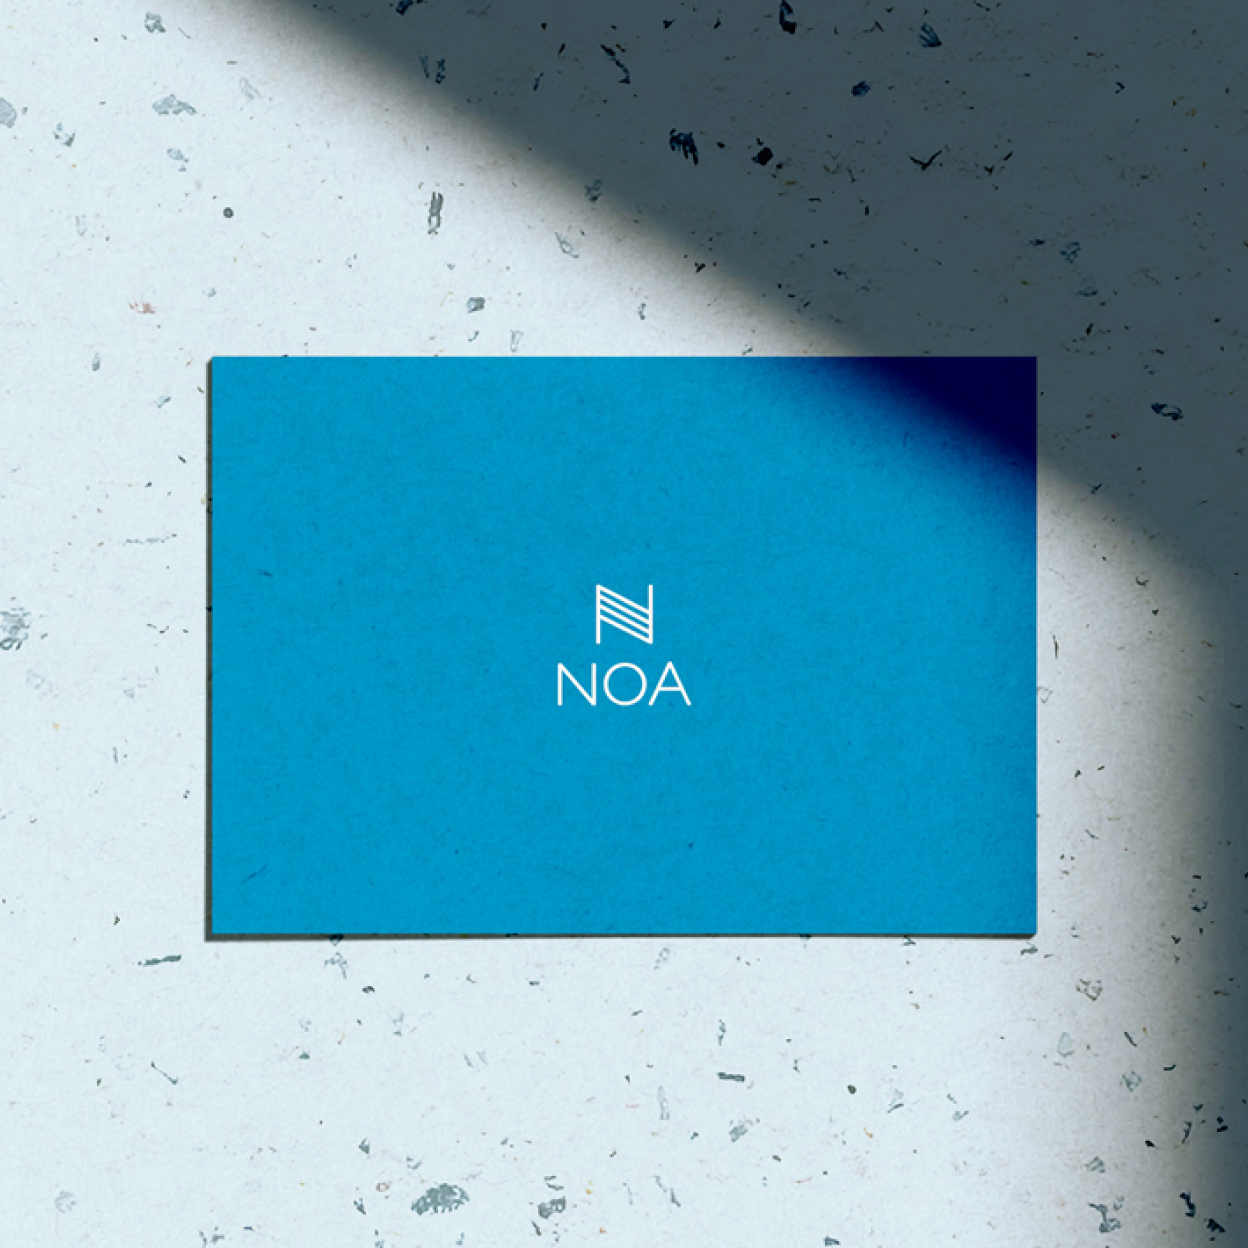 Noa - branding